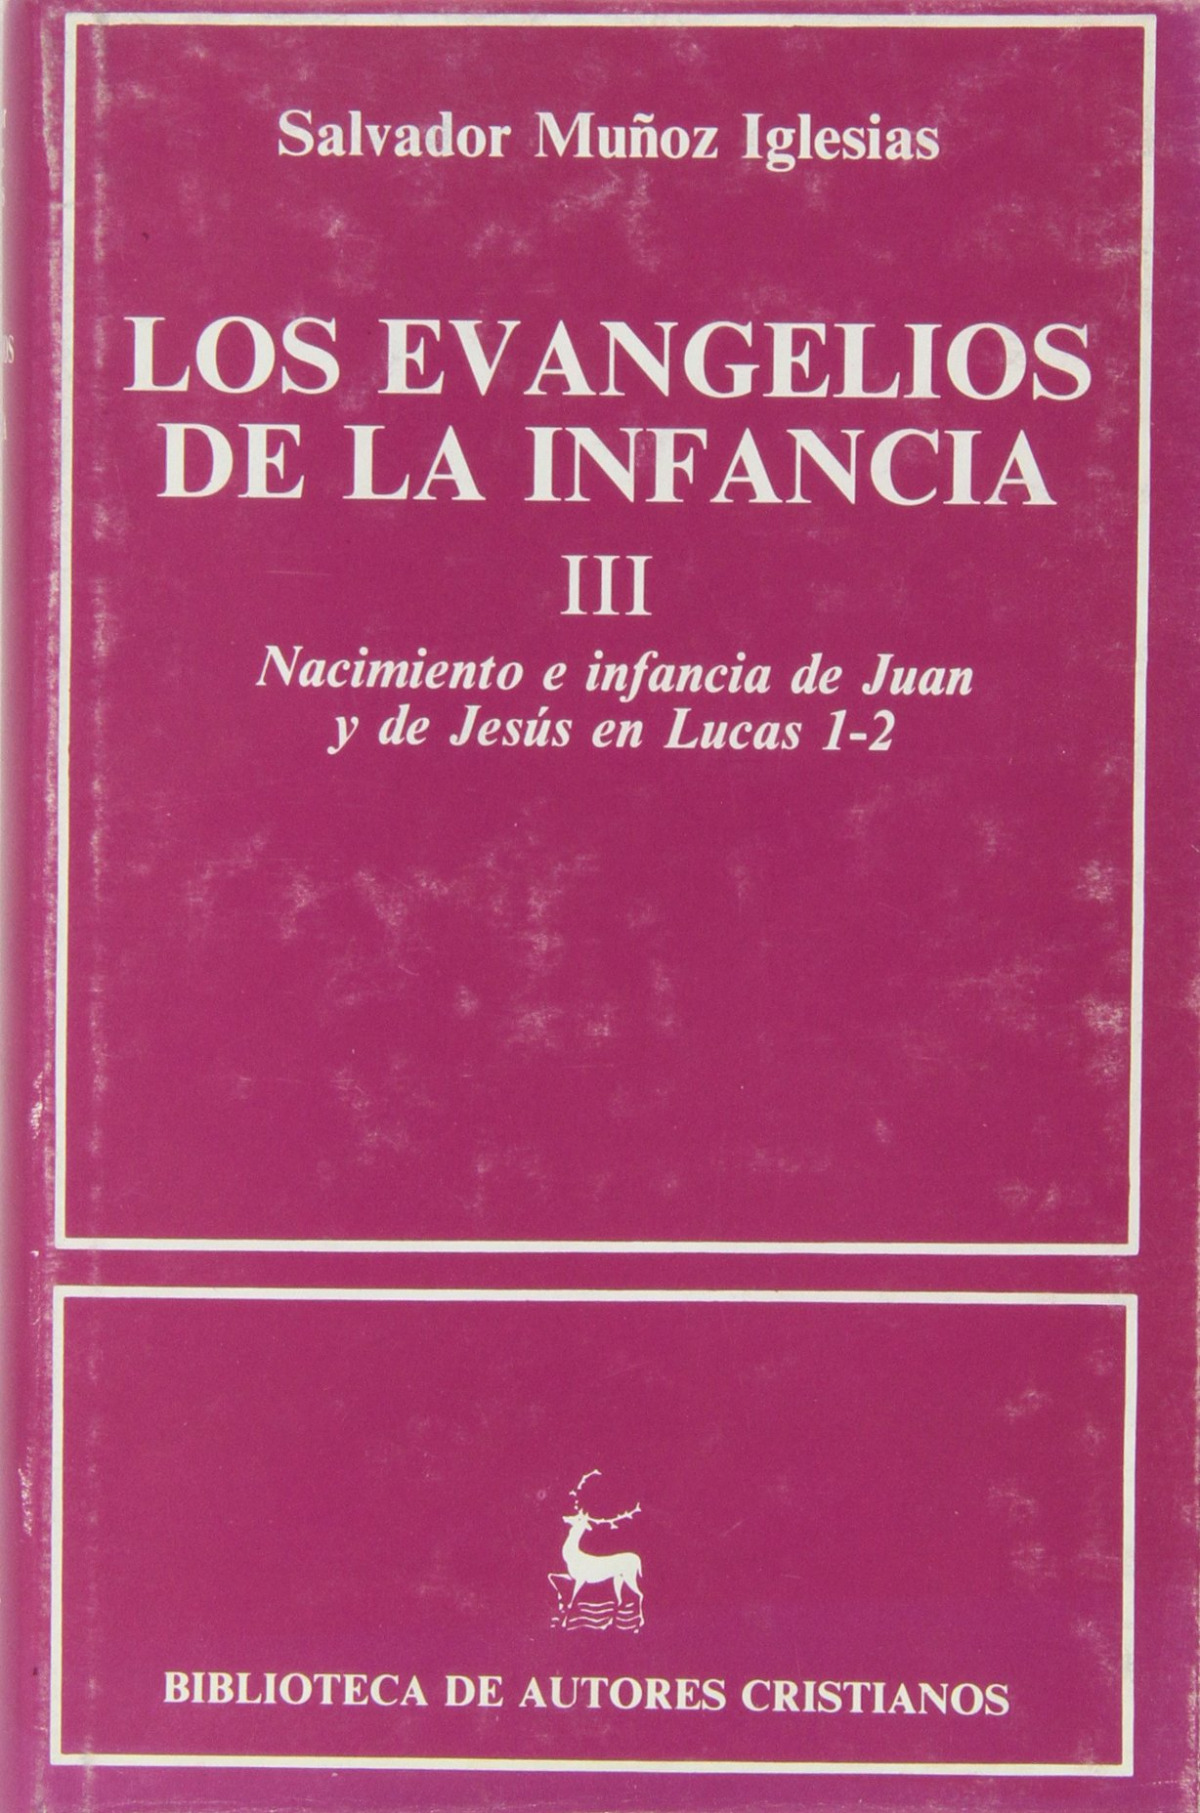 Los Evangelios de la infancia.III: Nacimiento e infancia de Juan y de - Muñoz Iglesias, Salvador